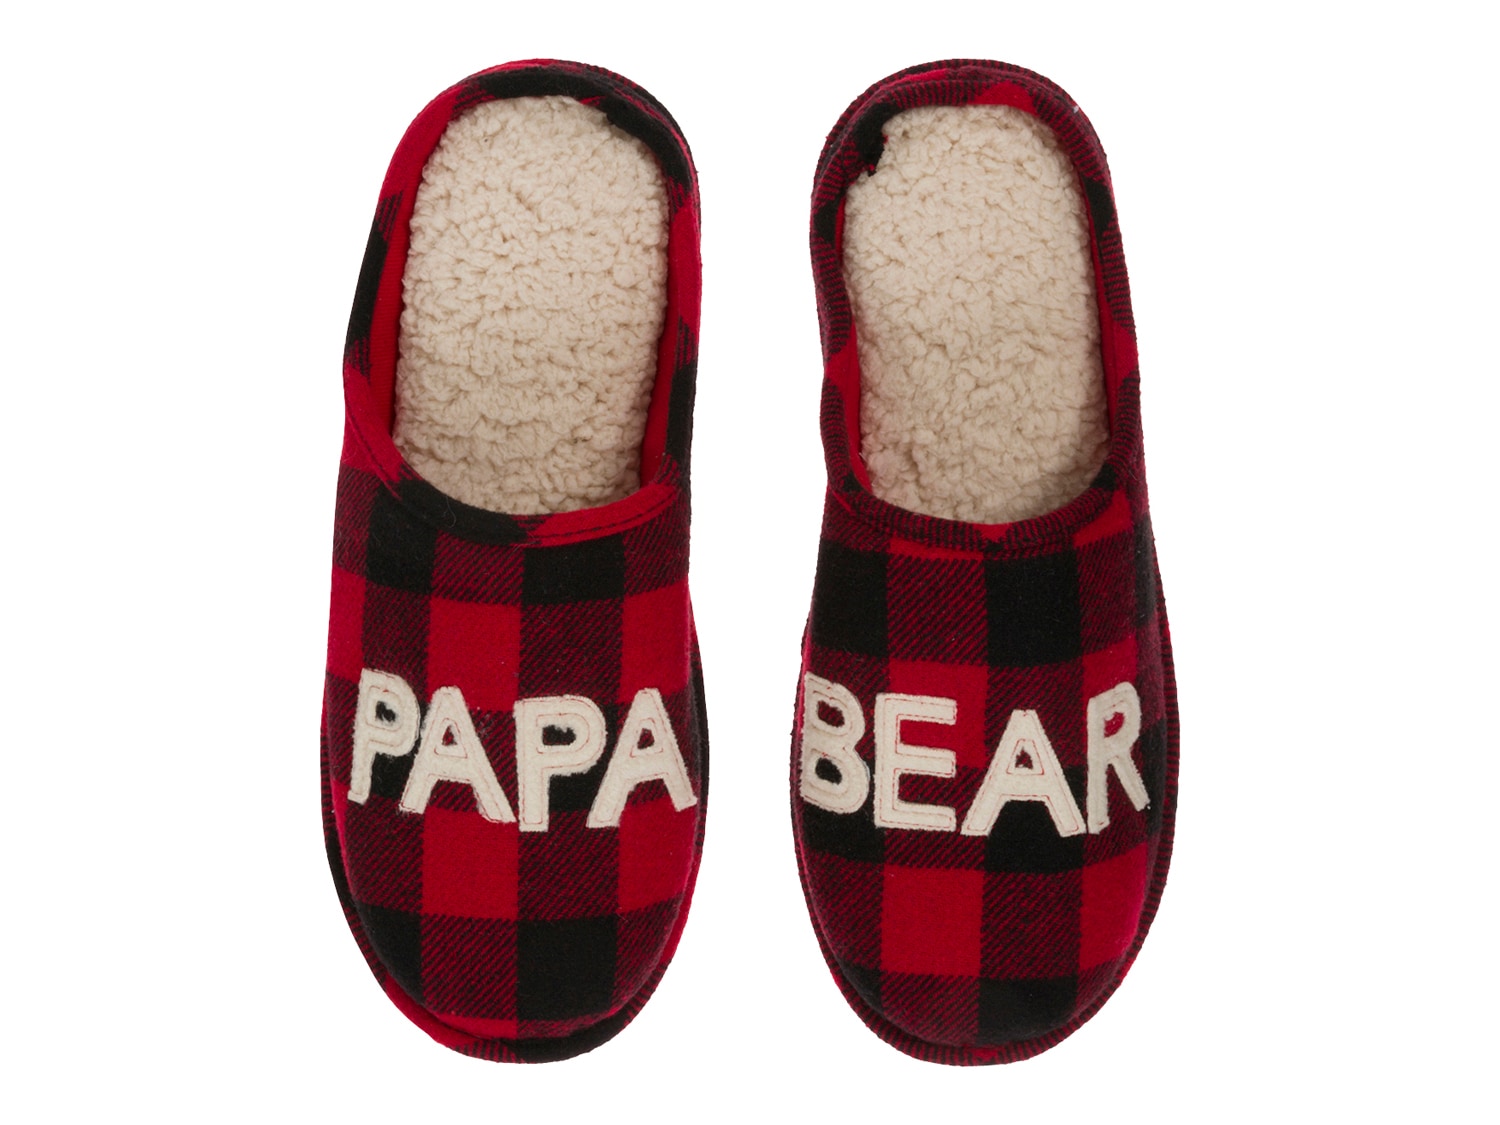 dearfoams best dad slippers